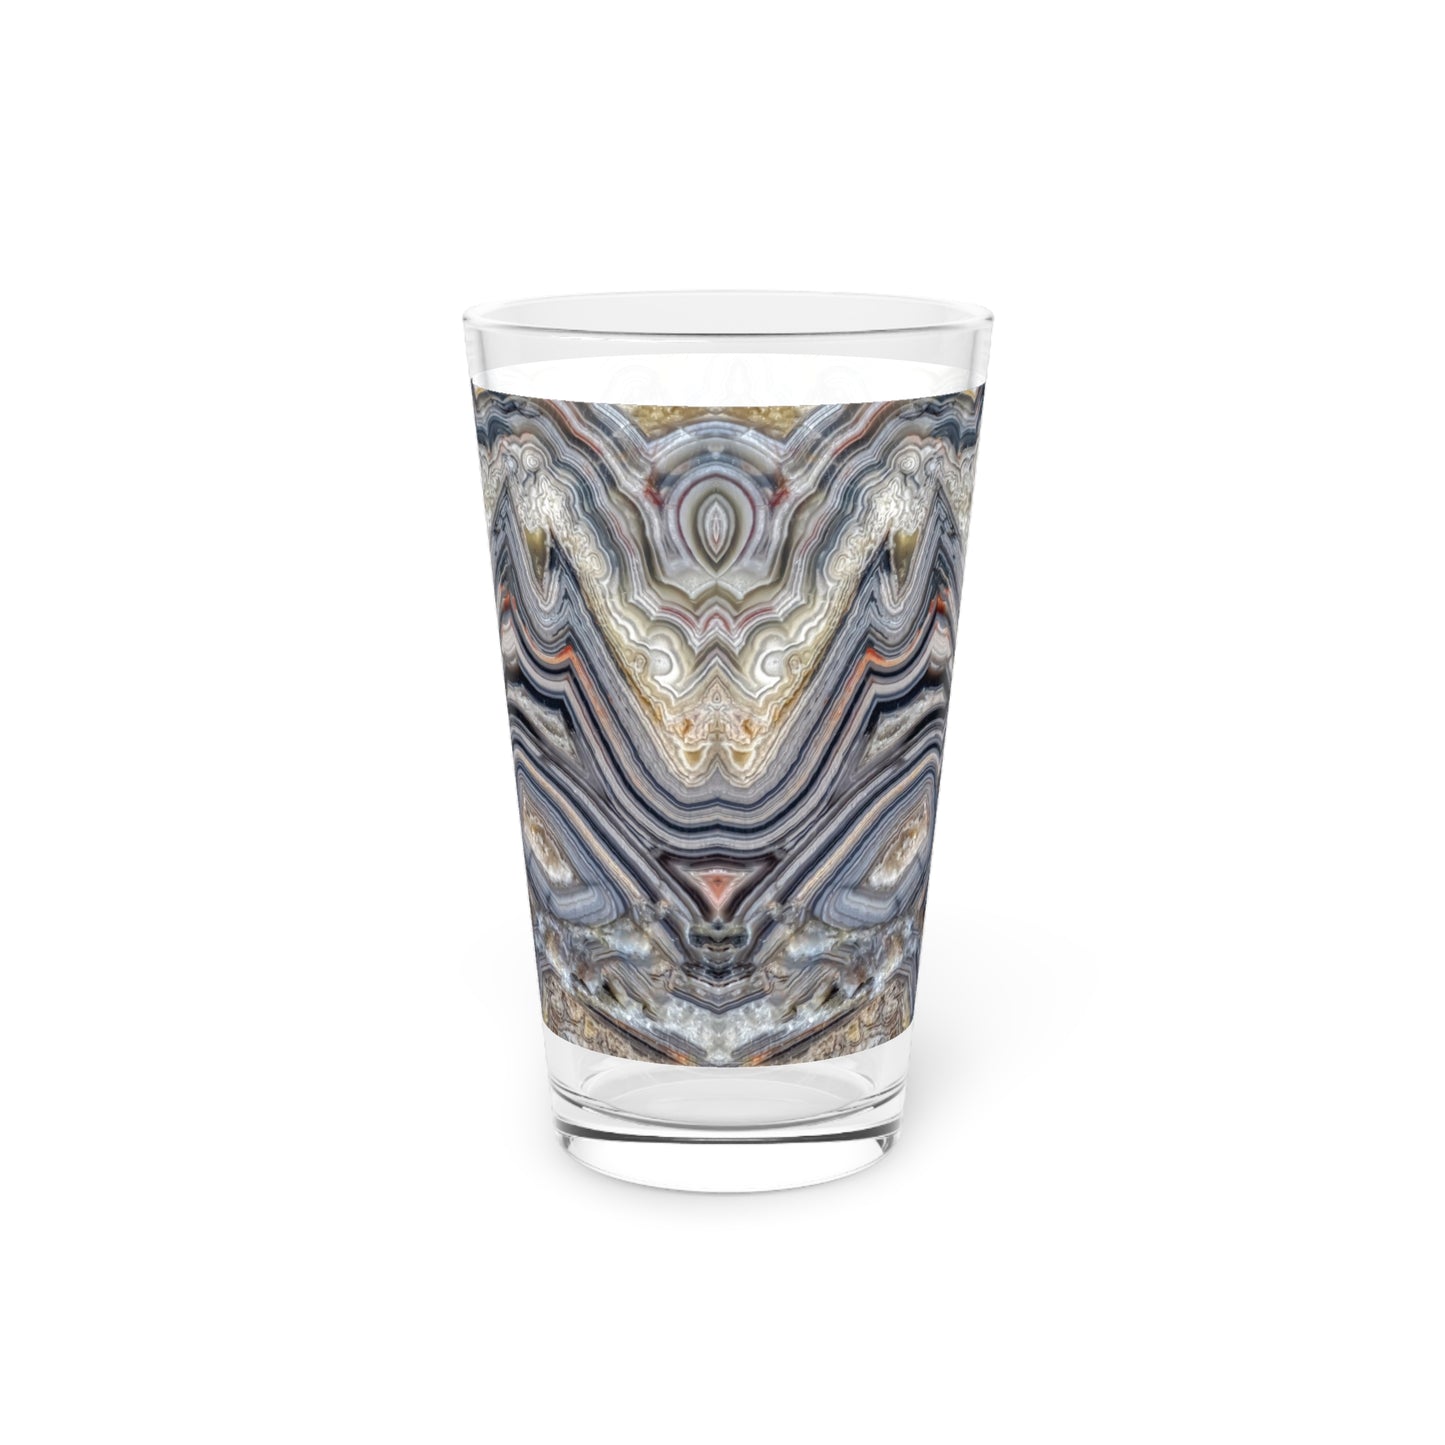 Crazy Lace Agate Optimism Pint Glass, 16oz